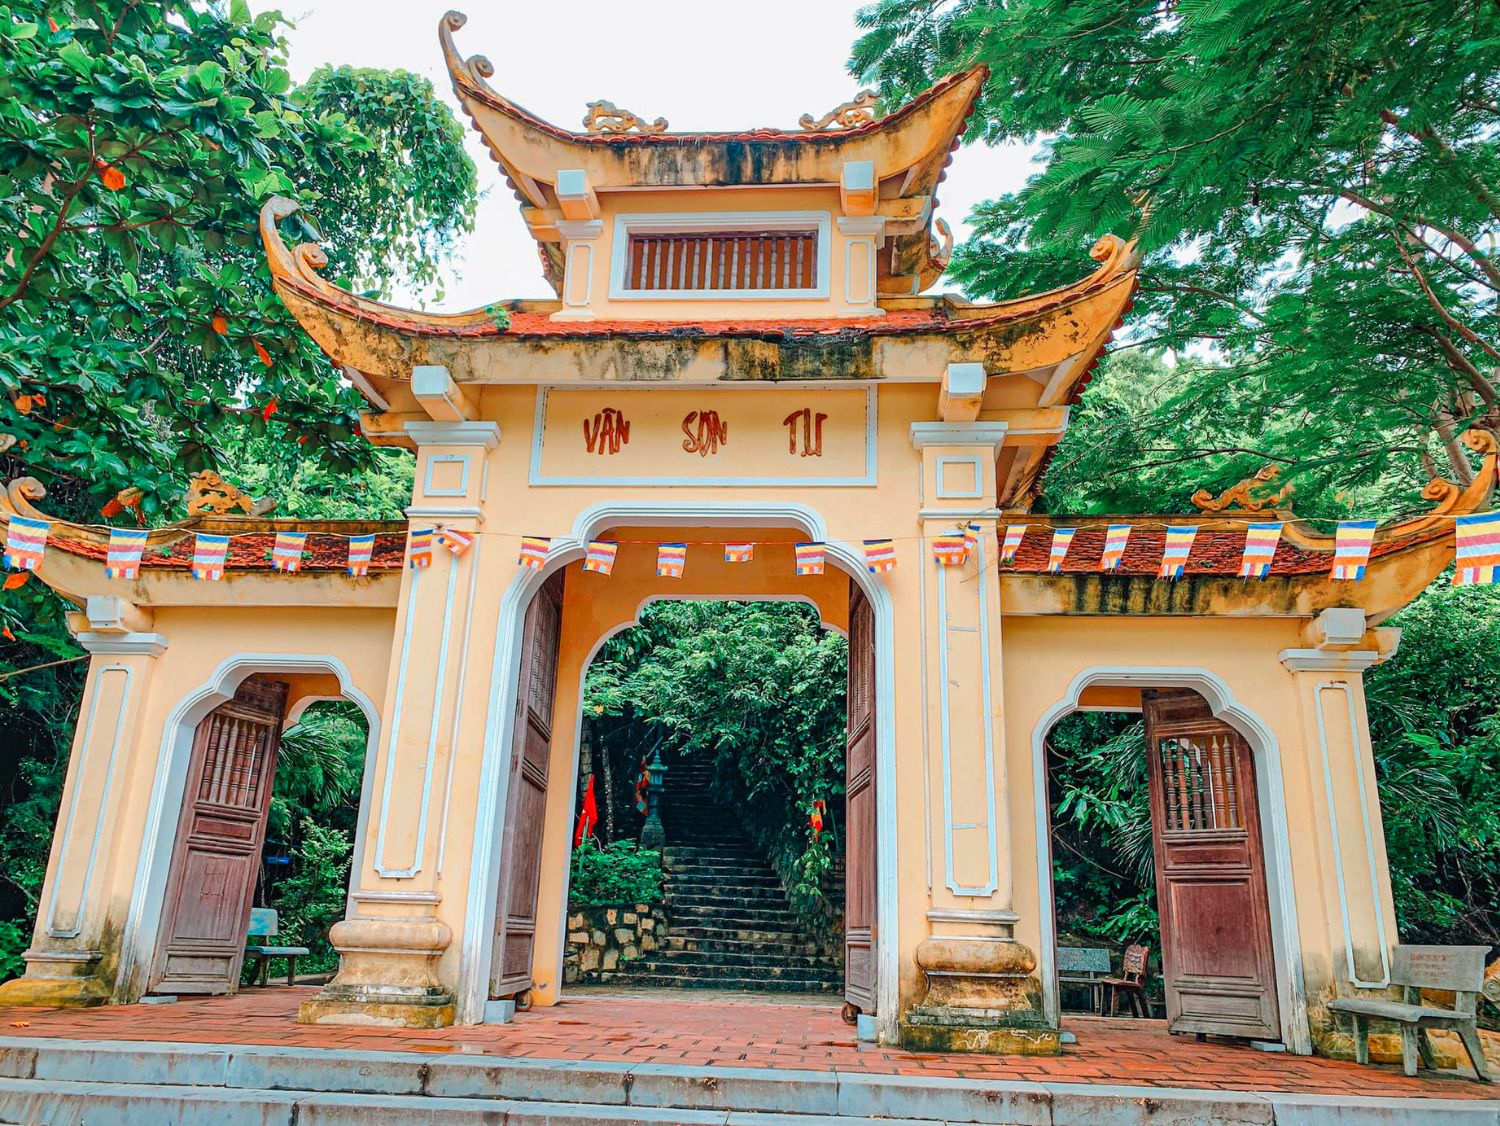 Viếng thăm Vân Sơn Tự (Chùa Núi Một) Côn Đảo, ngôi chùa đẹp nhất Việt Nam 6